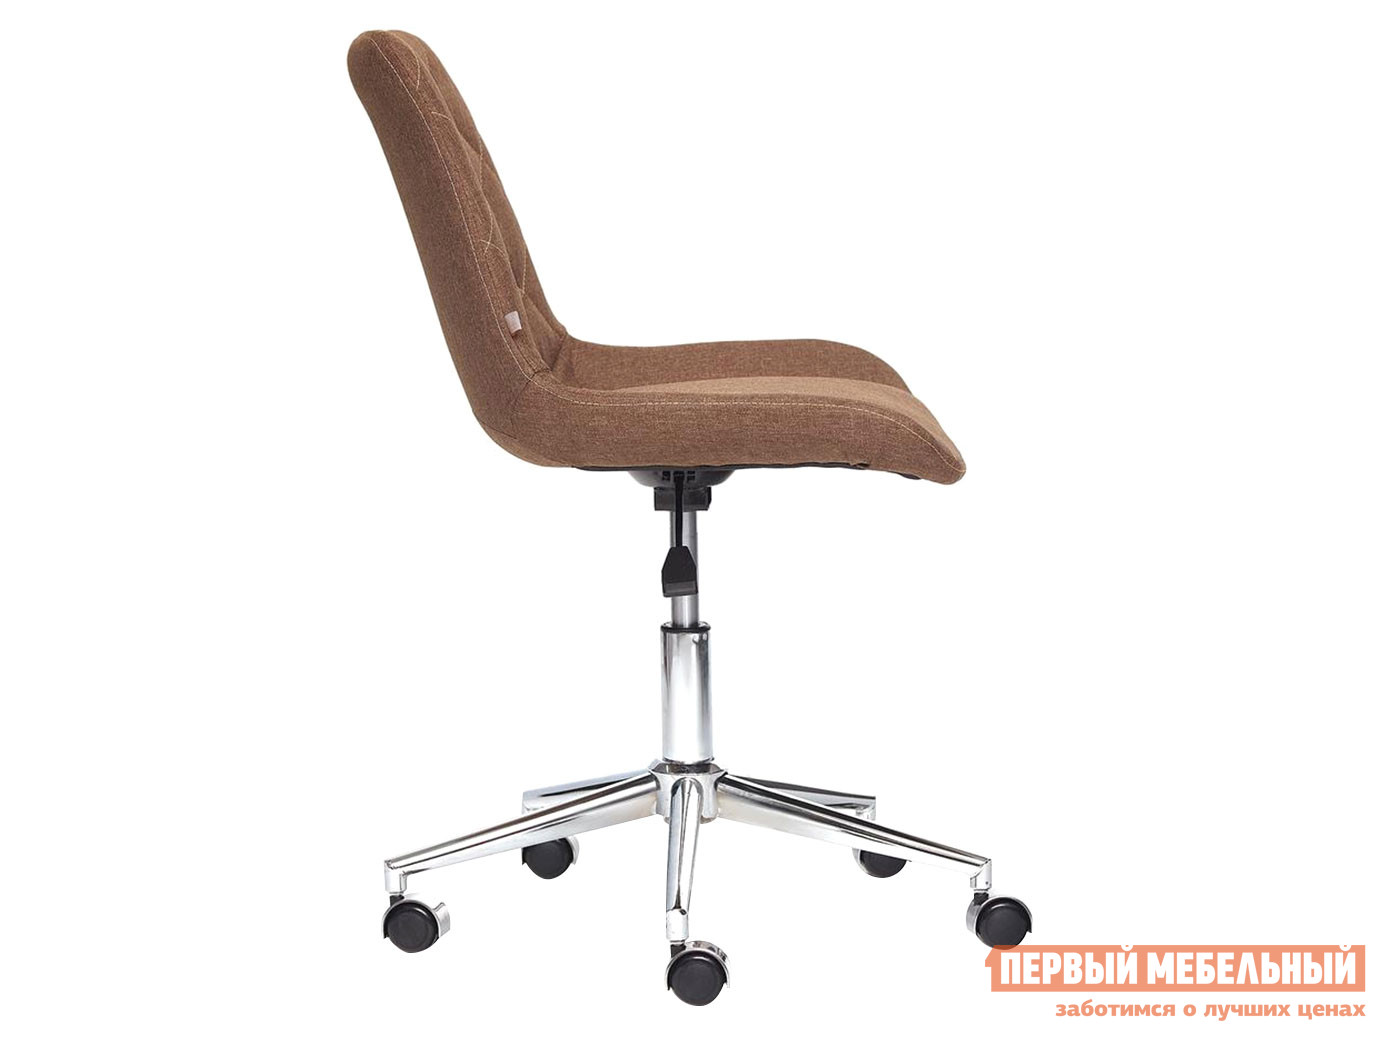 Офисное кресло  STYLE Ткань / Коричневый / F25 от Первый Мебельный